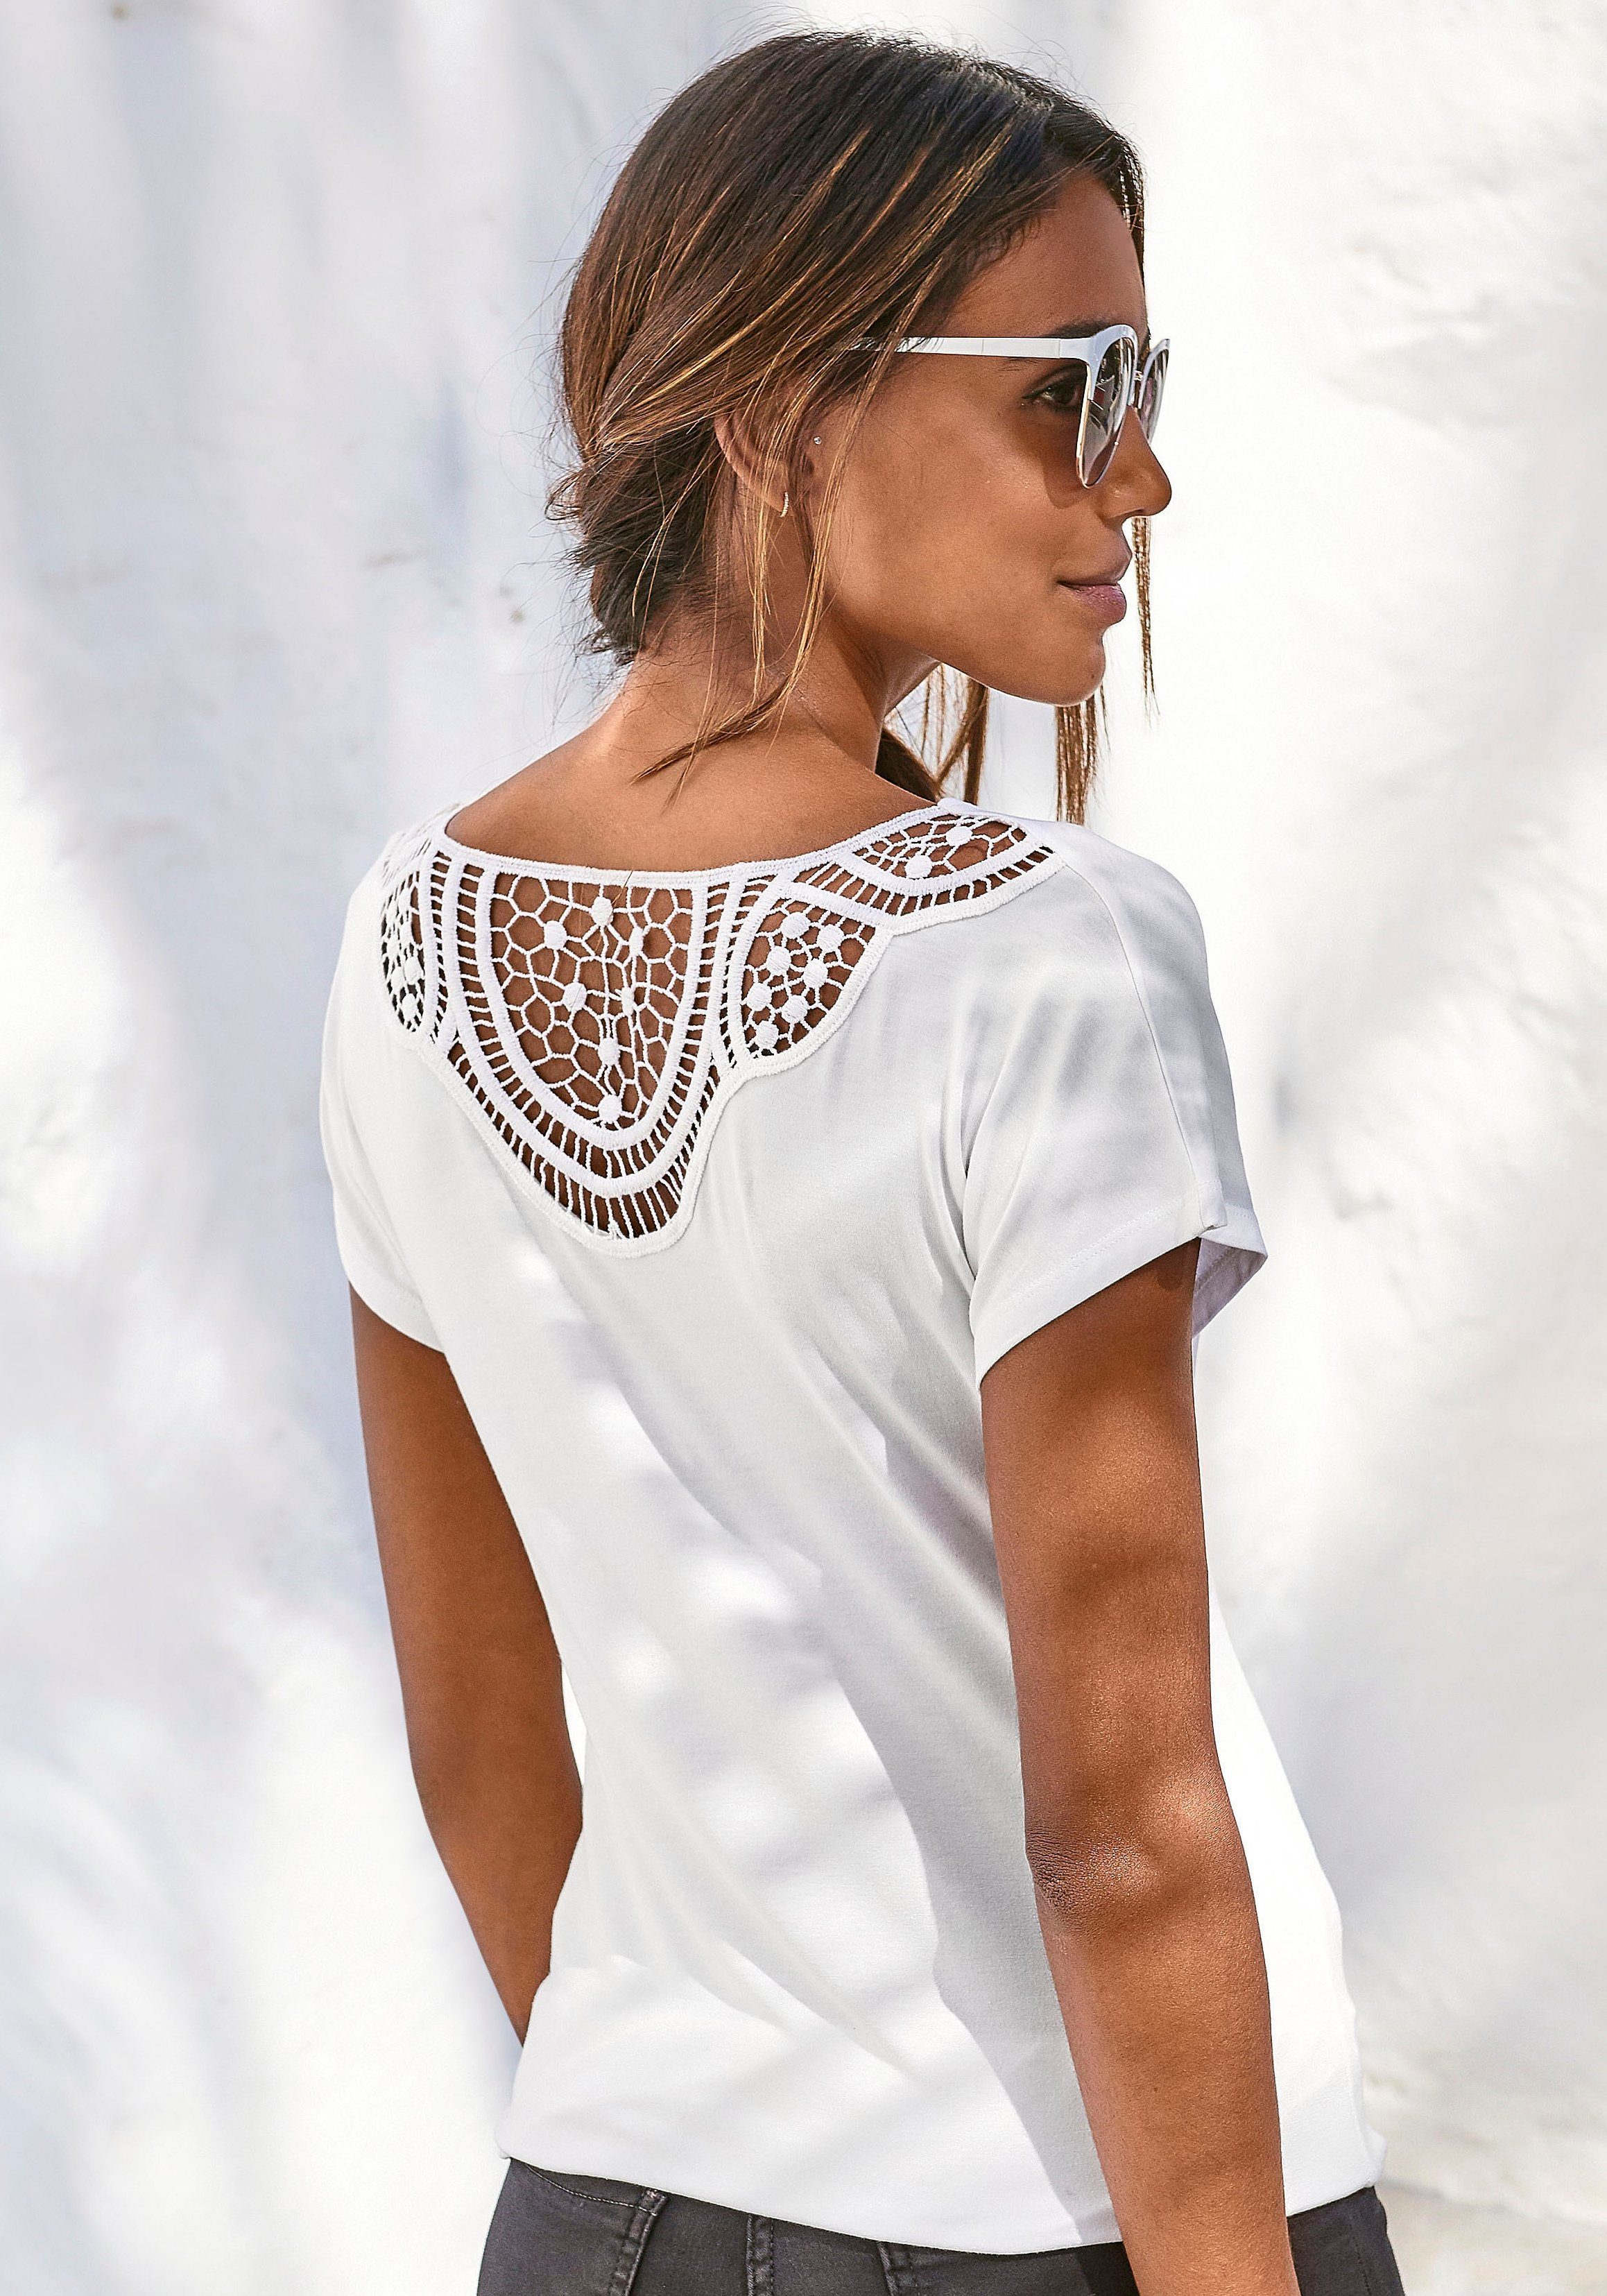 Weiße Damen T-Shirts online kaufen | OTTO